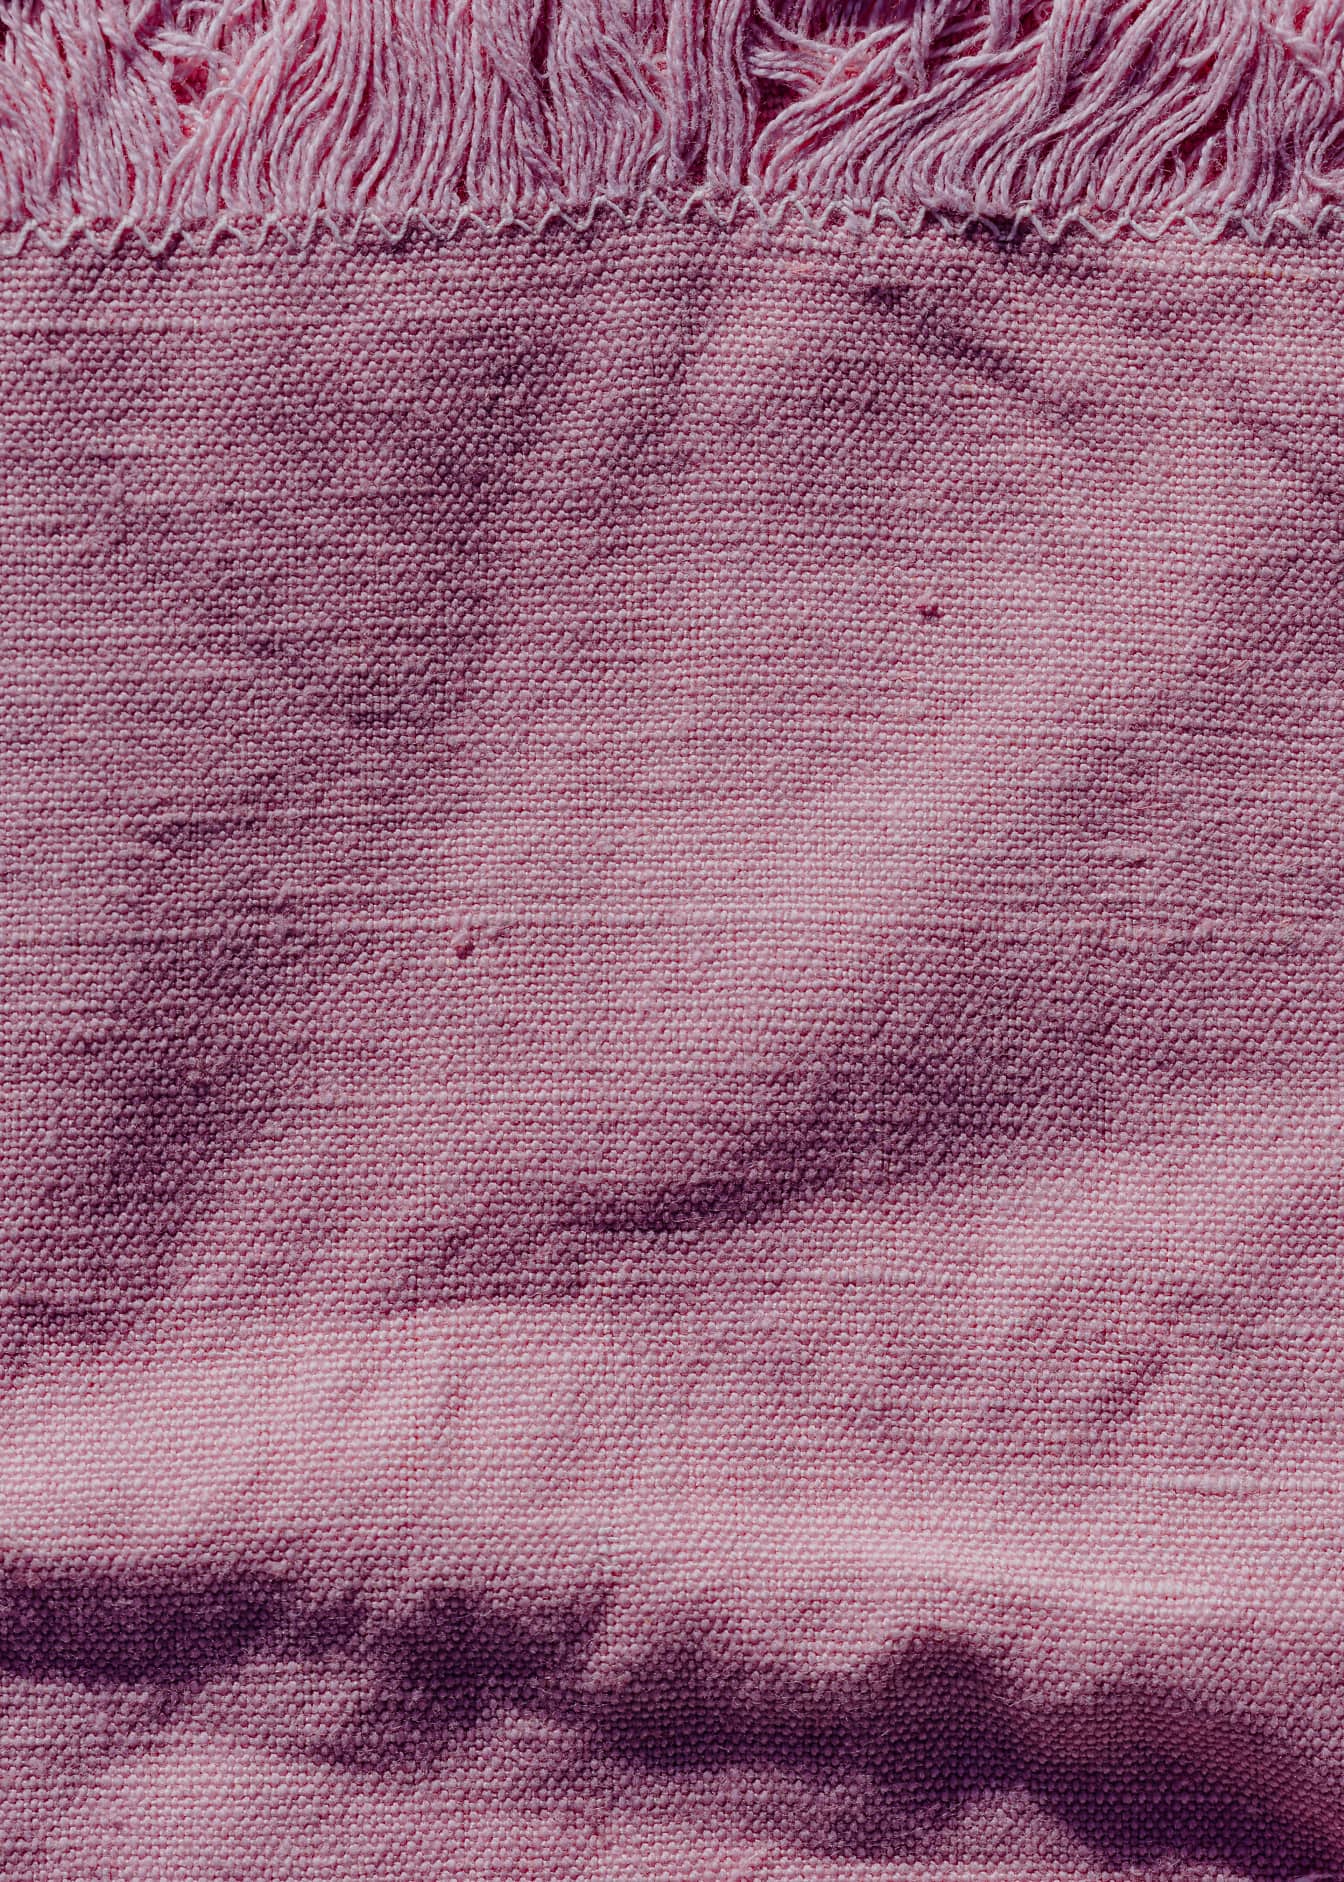 Textura de un tejido rosado de lino rugoso con flecos en el borde